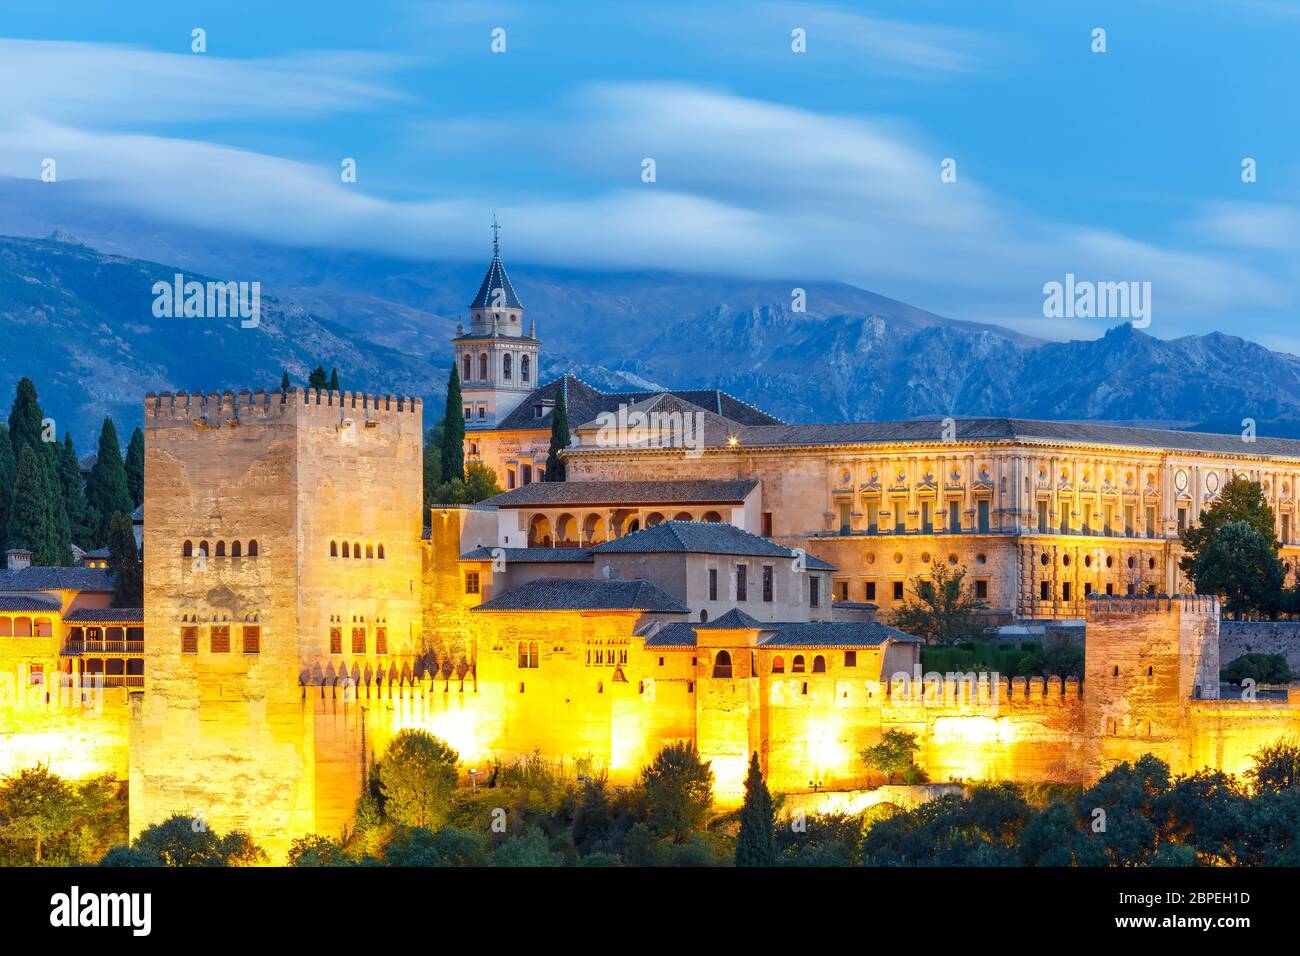 Palast und Festung Komplex Alhambra mit Comares Turm, Palacios Nazaries und Palast von Karl V. während der blauen Stunde am Abend in Granada, Andalusien, Spa Stockfoto